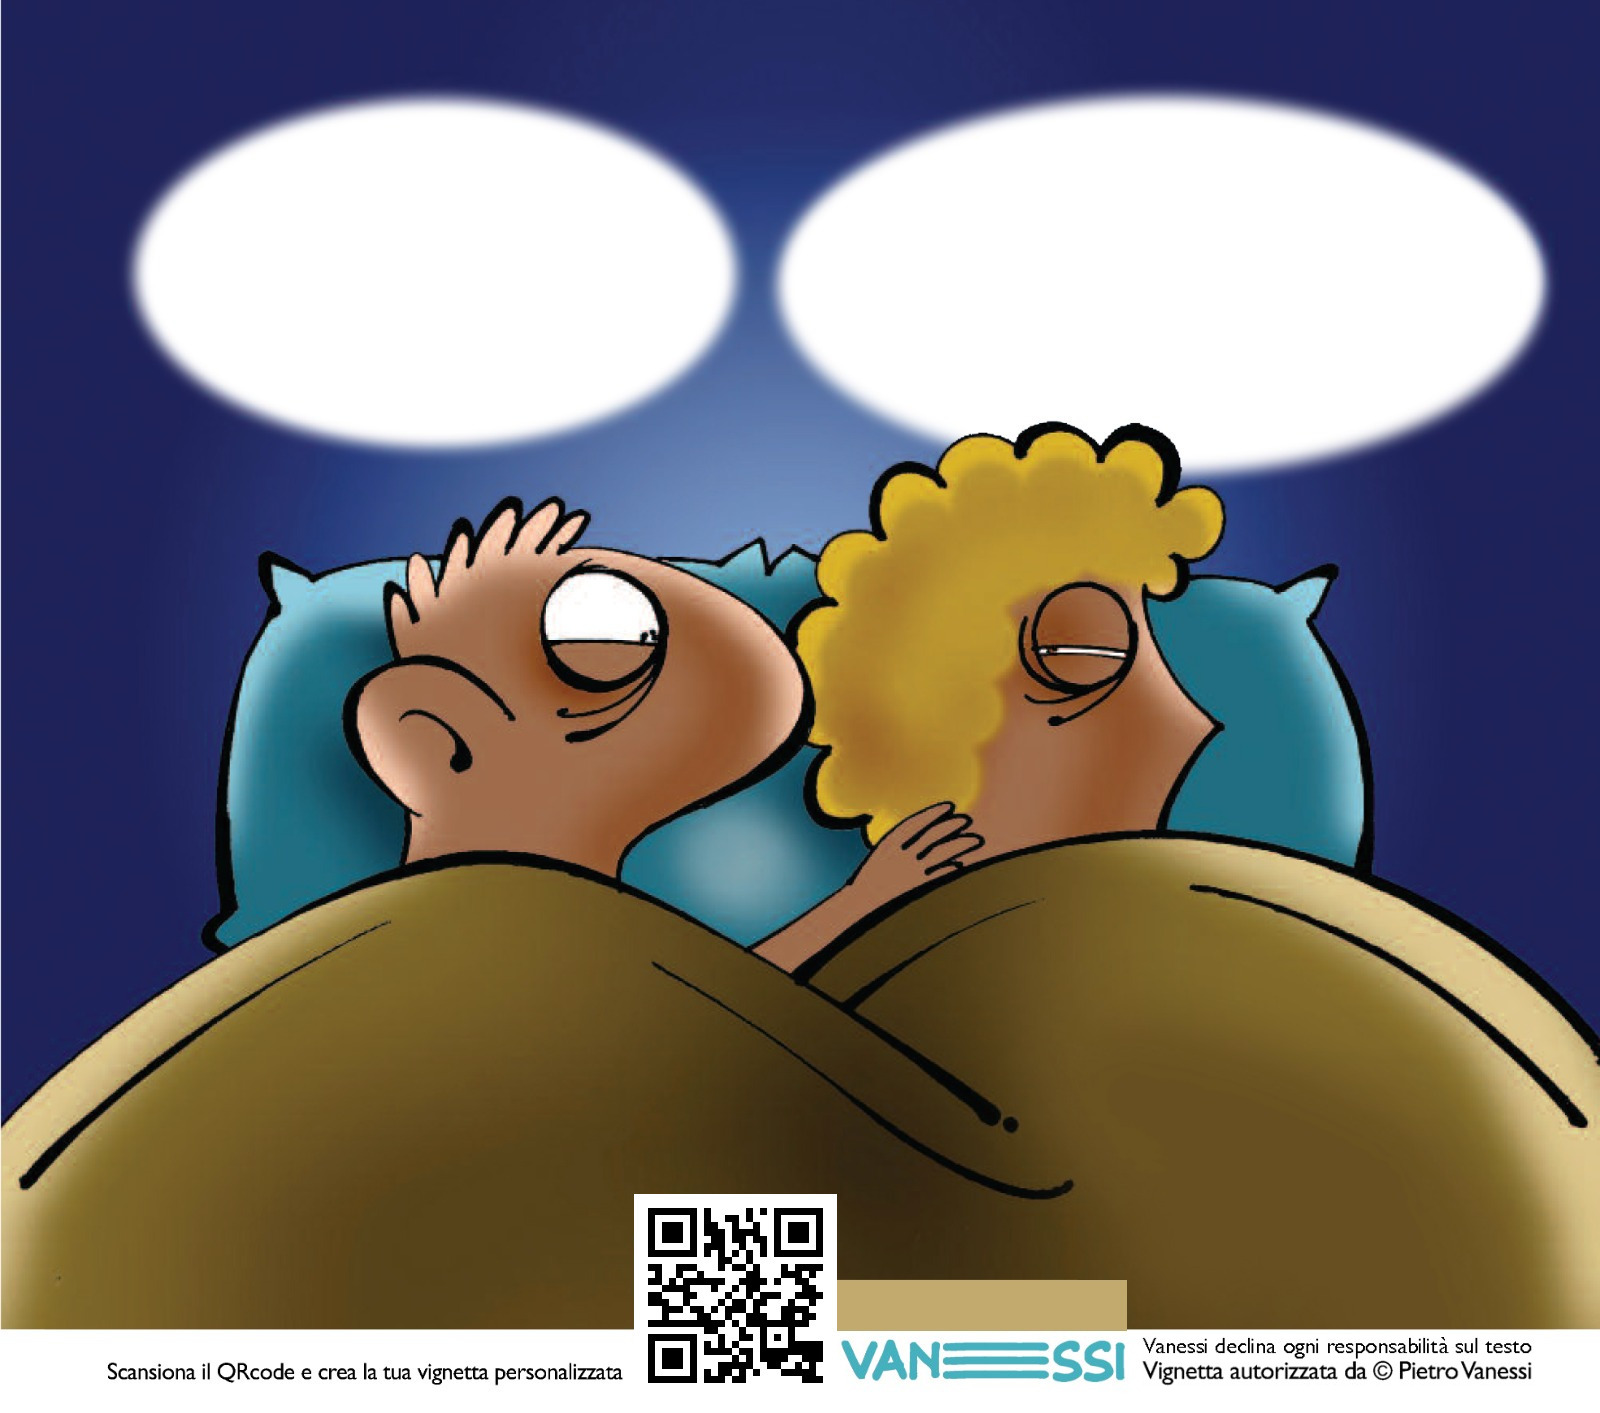 Vignetta personalizzabile che rappresenta una coppia lei e lui a letto, lui con aria desiderosa, lei che lo gela con una occhiata